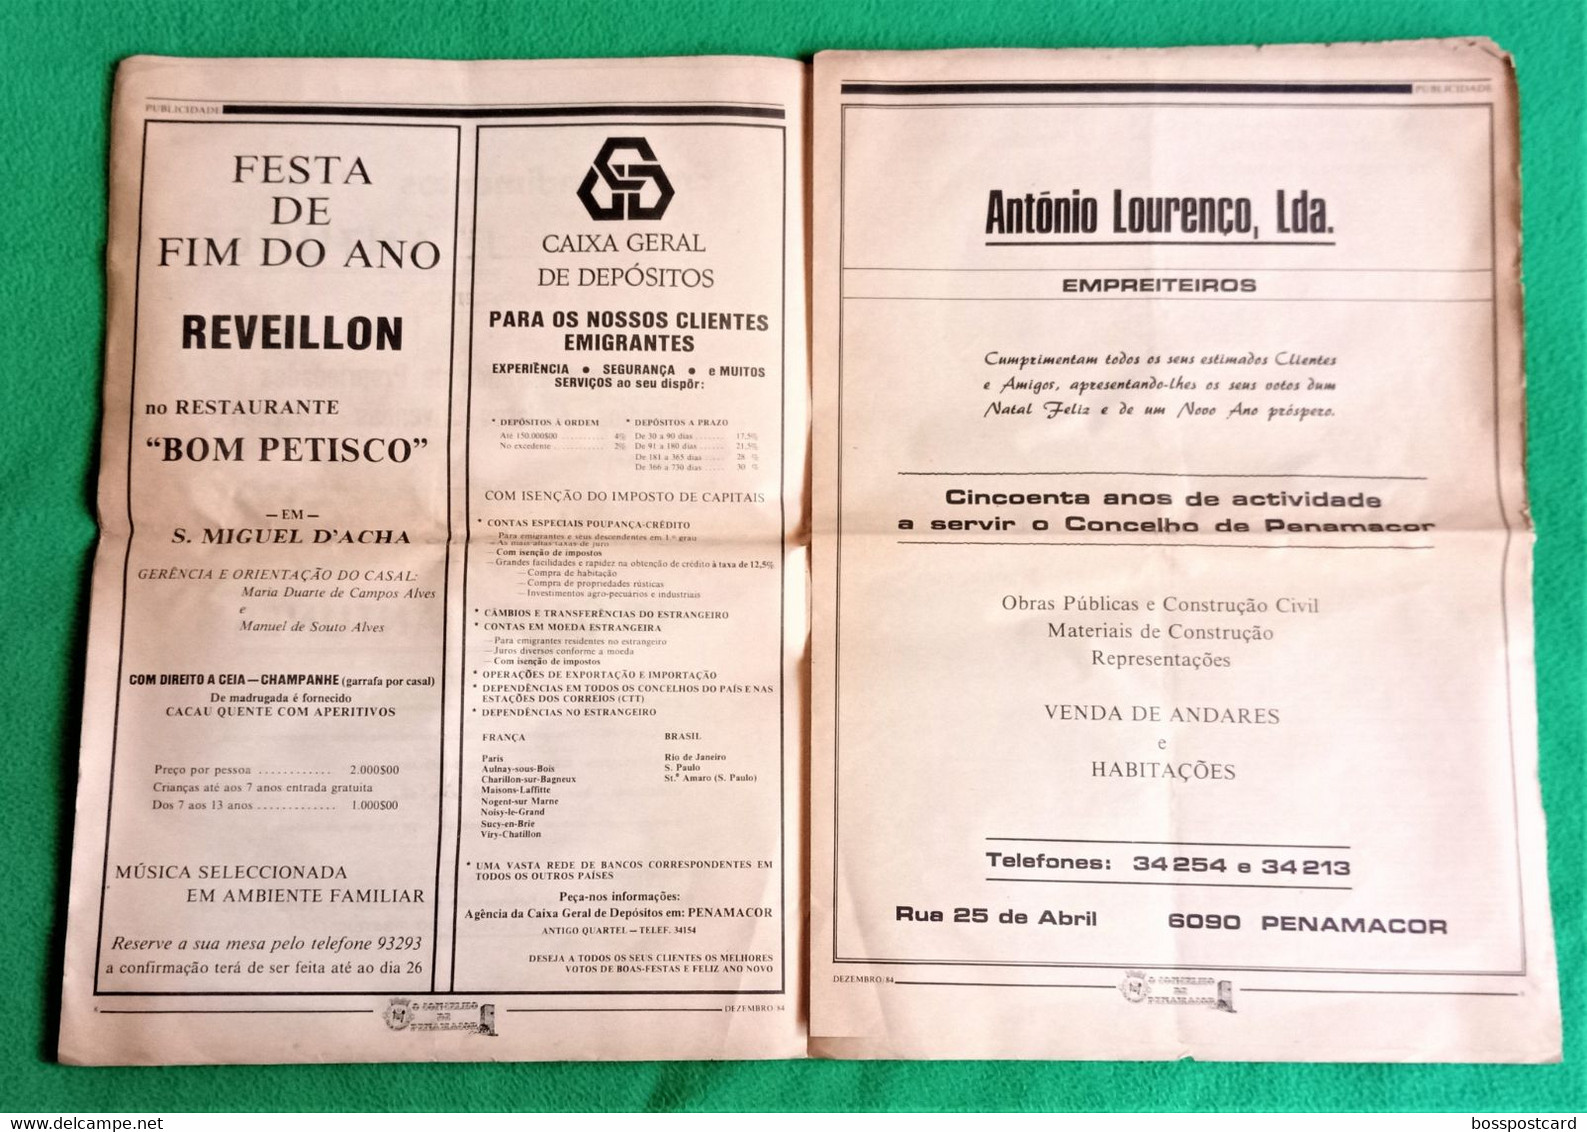 Penamacor - Jornal O Concelho De Penamacor Nº 45, 31 De Dezembro De 1984 - Imprensa. Castelo Branco. Portugal. - General Issues